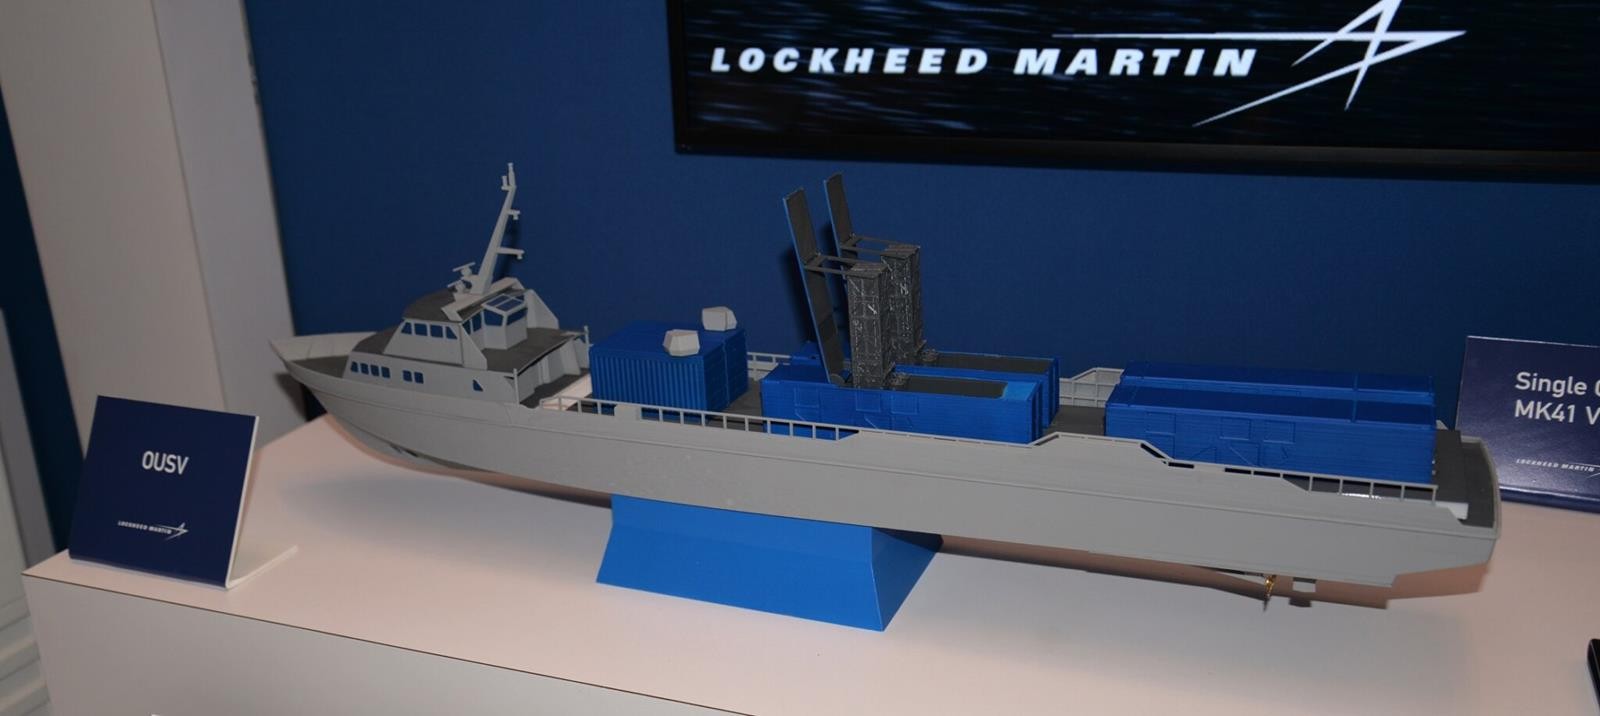 Lockheed Martin pokazał swojego OUSV, OUSV, bezzałogowy okręt uzbrojony w 16 wyrzutni Mark 41 VLS